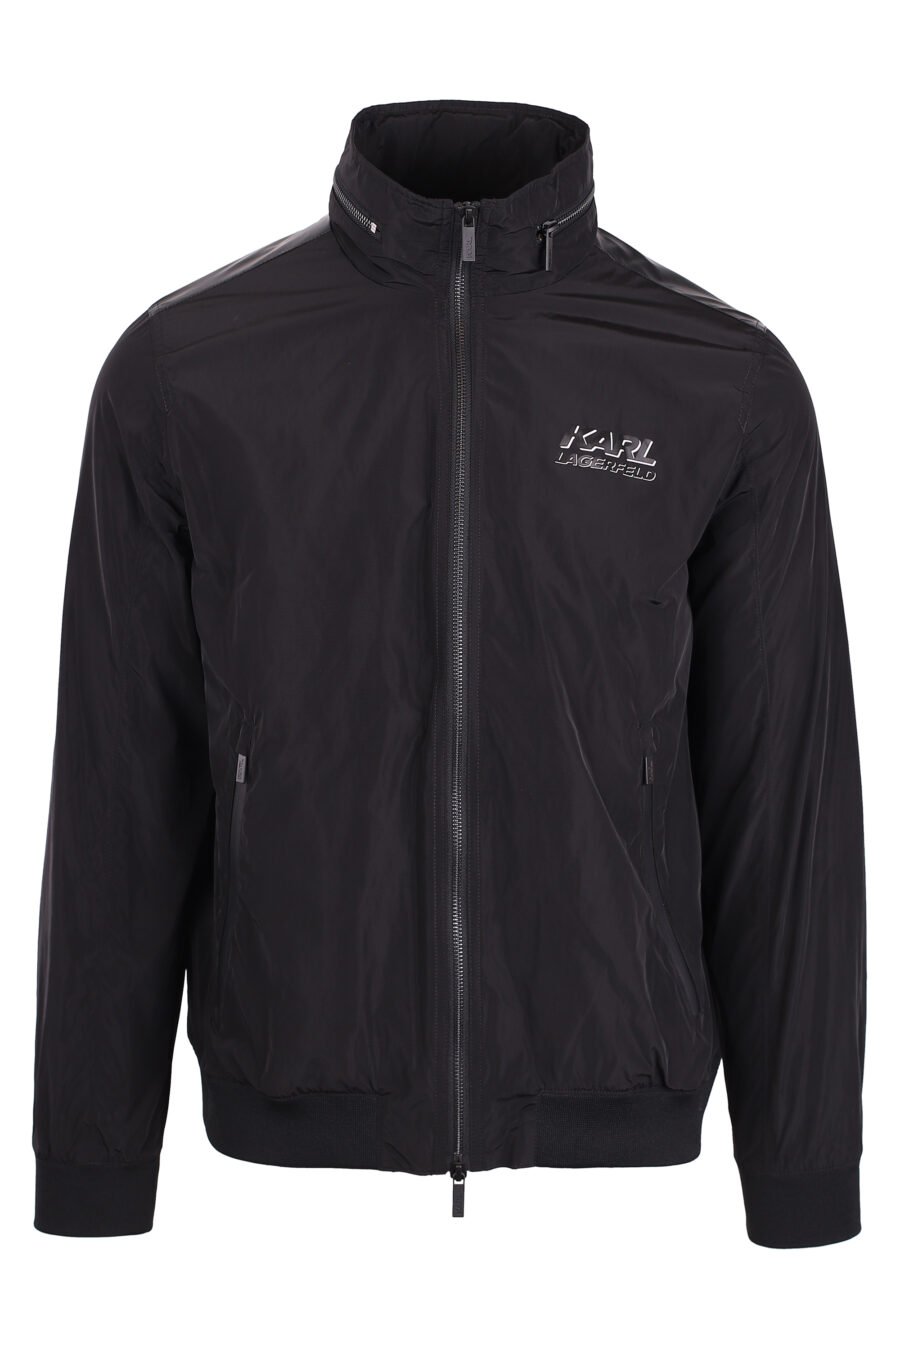 Schwarze Jacke mit Reißverschluss und schwarzem 3d weißem Logo - IMG 4318